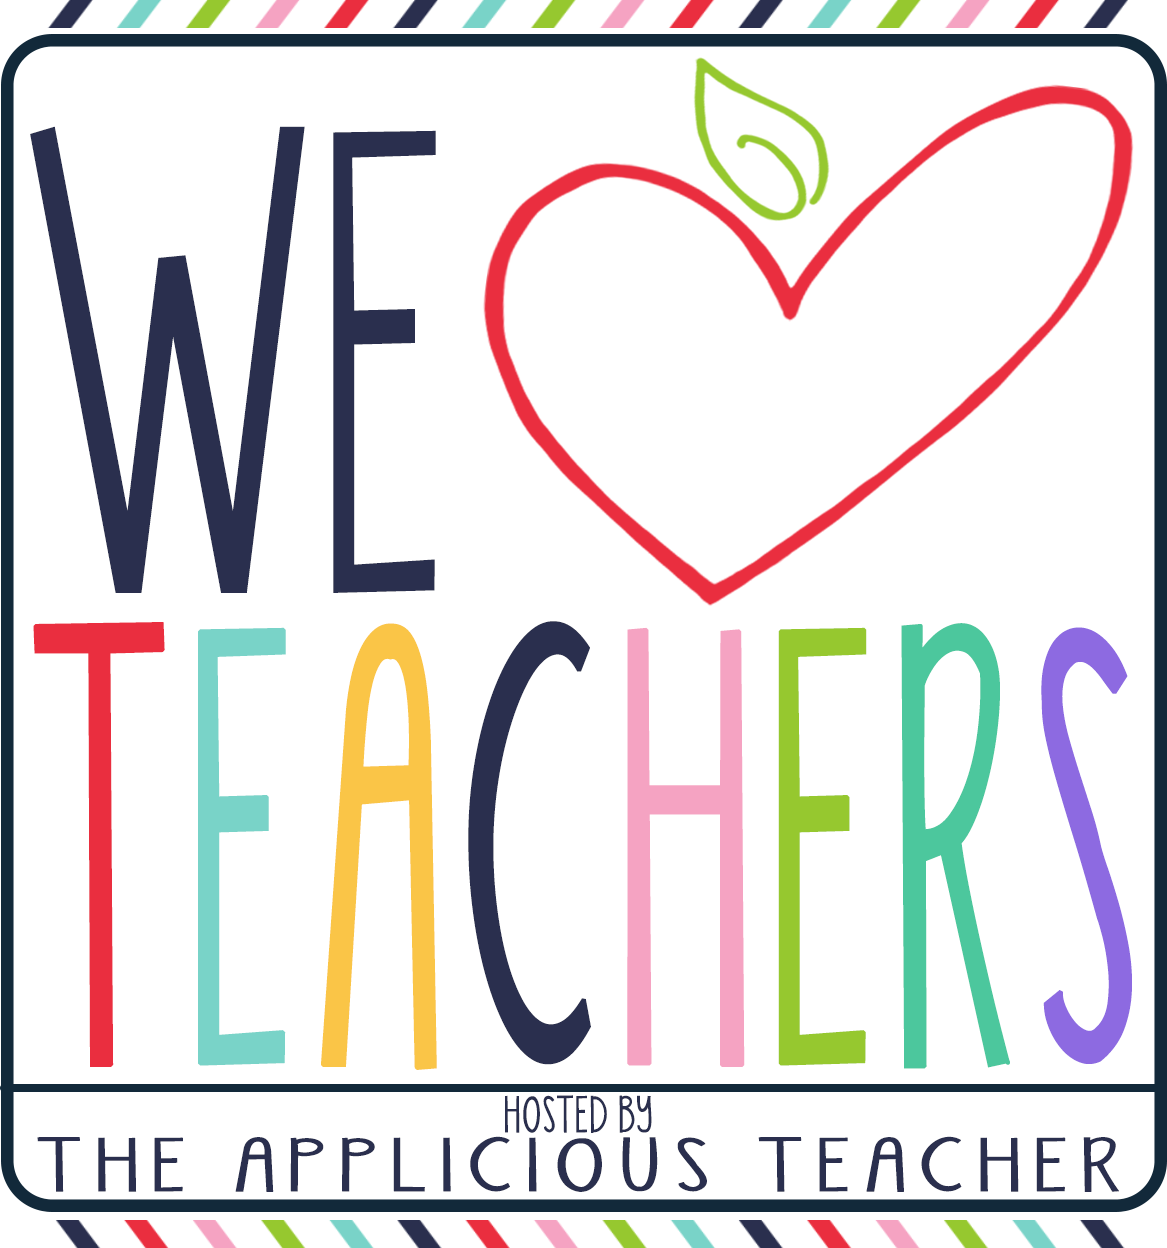 free clipart for teachers pay teachers - photo #49